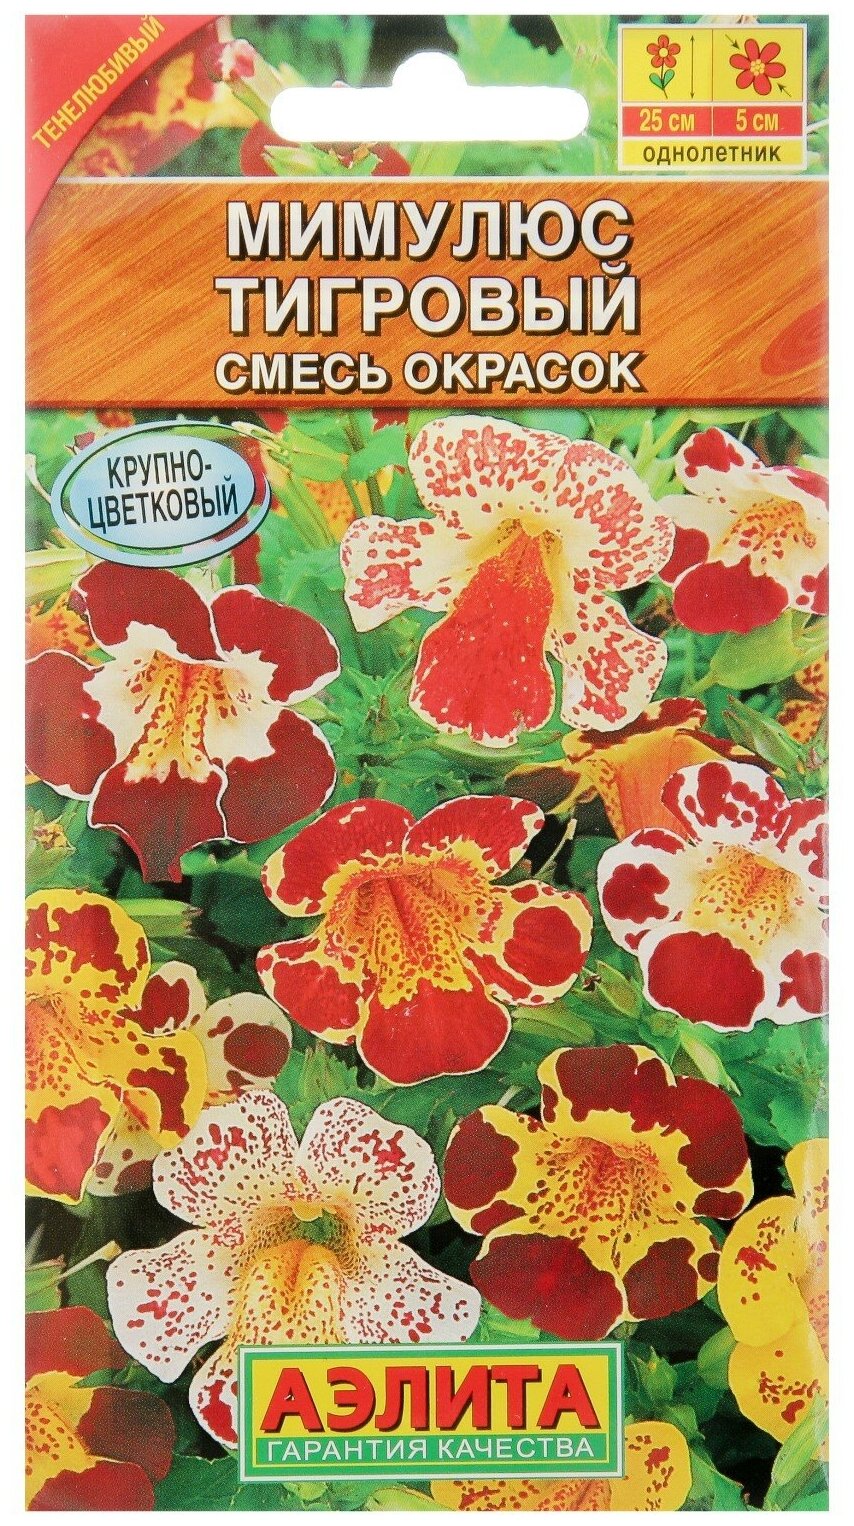 Семена цветов Мимулюс "Крупноцветковый тигровый" смесь окрасок О 003 г